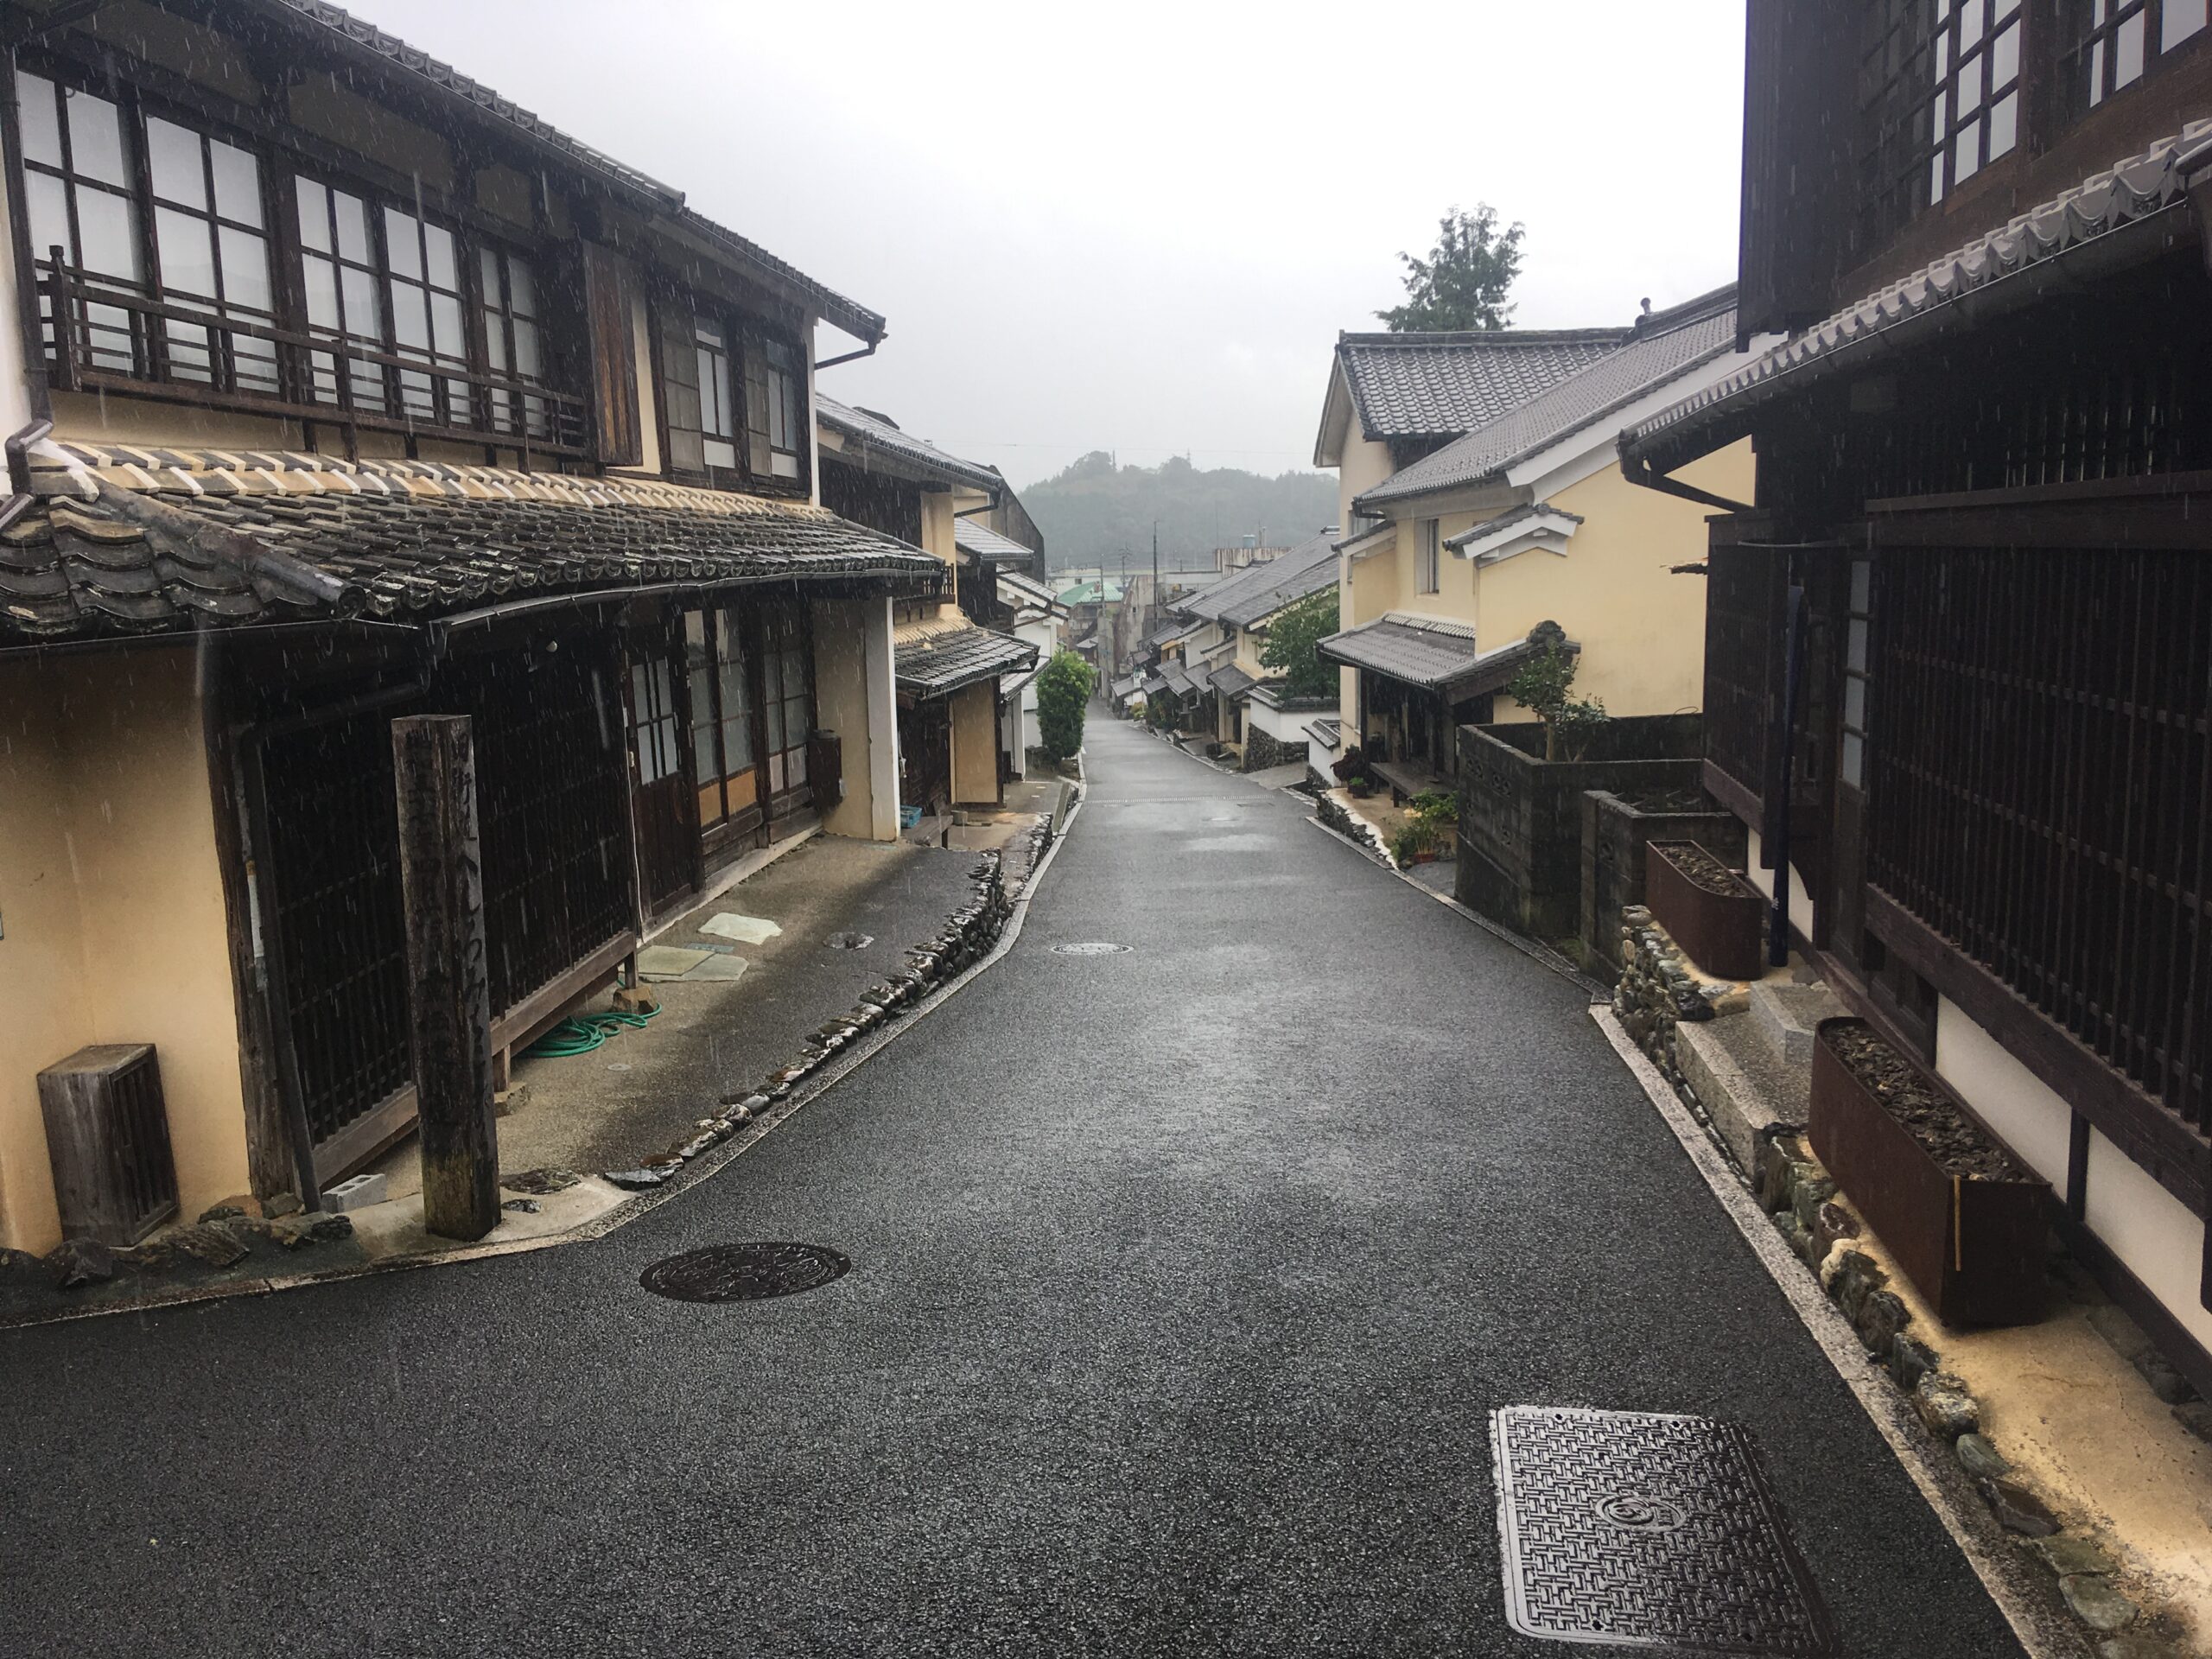 Een straatje met traditionele huizen